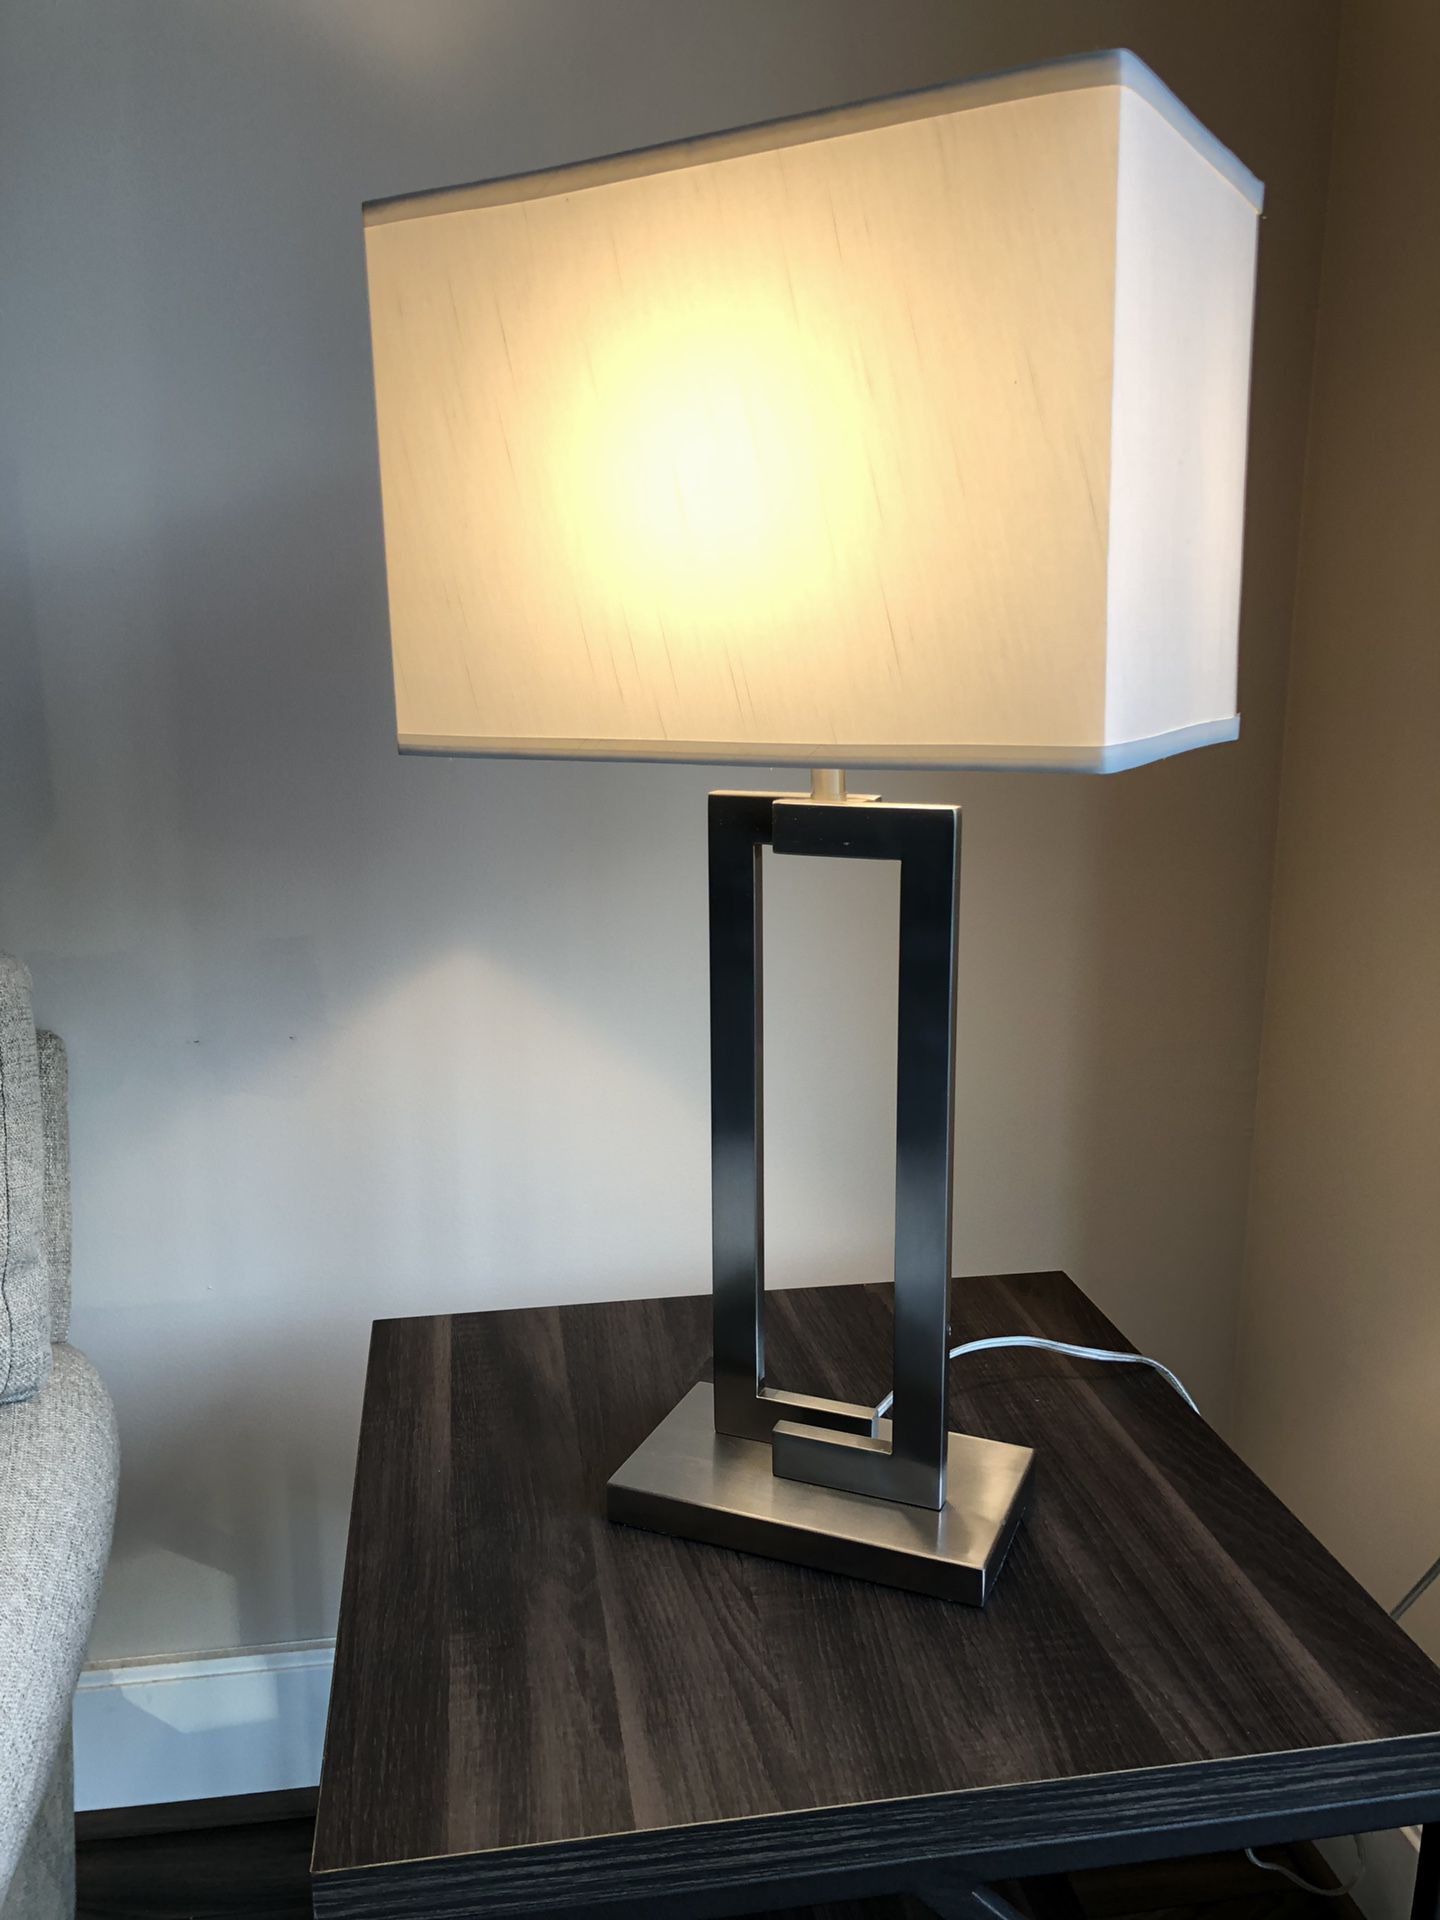 Table lamp (silver w white) -in Reston VA